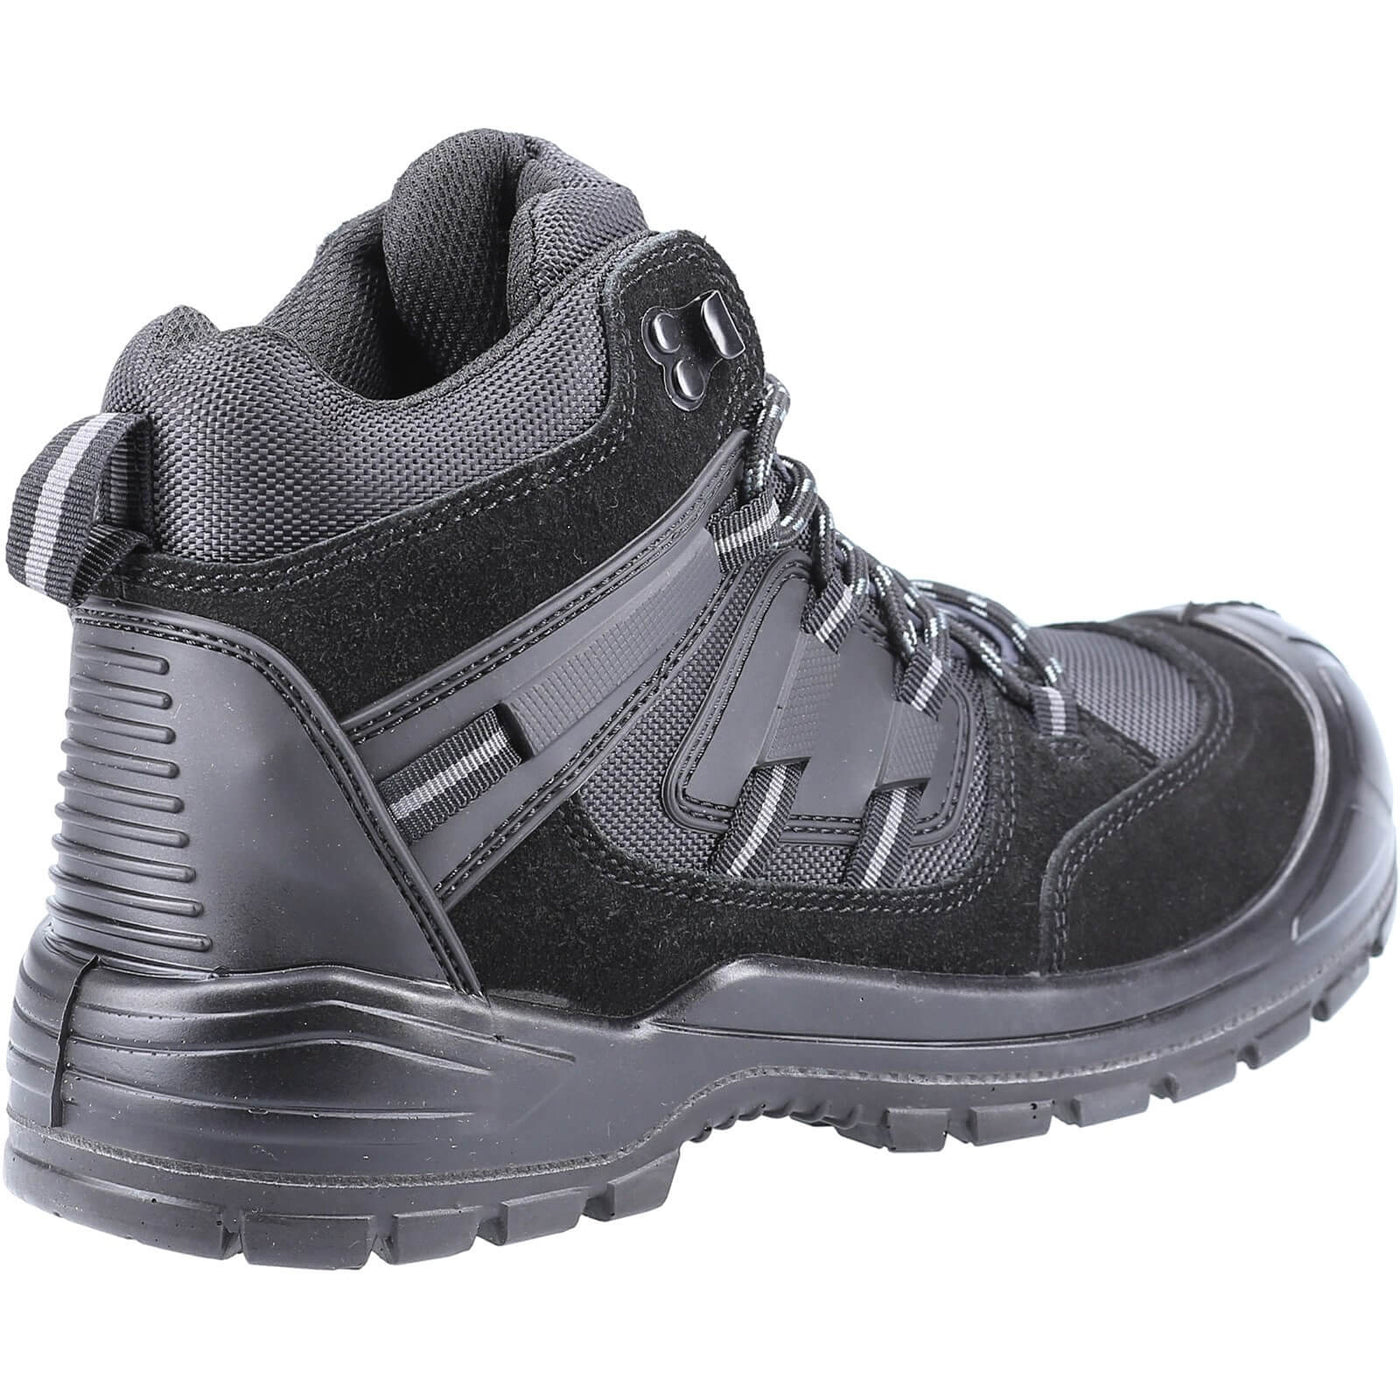 Amblers 257 Safety Boots Black 2#colour_black